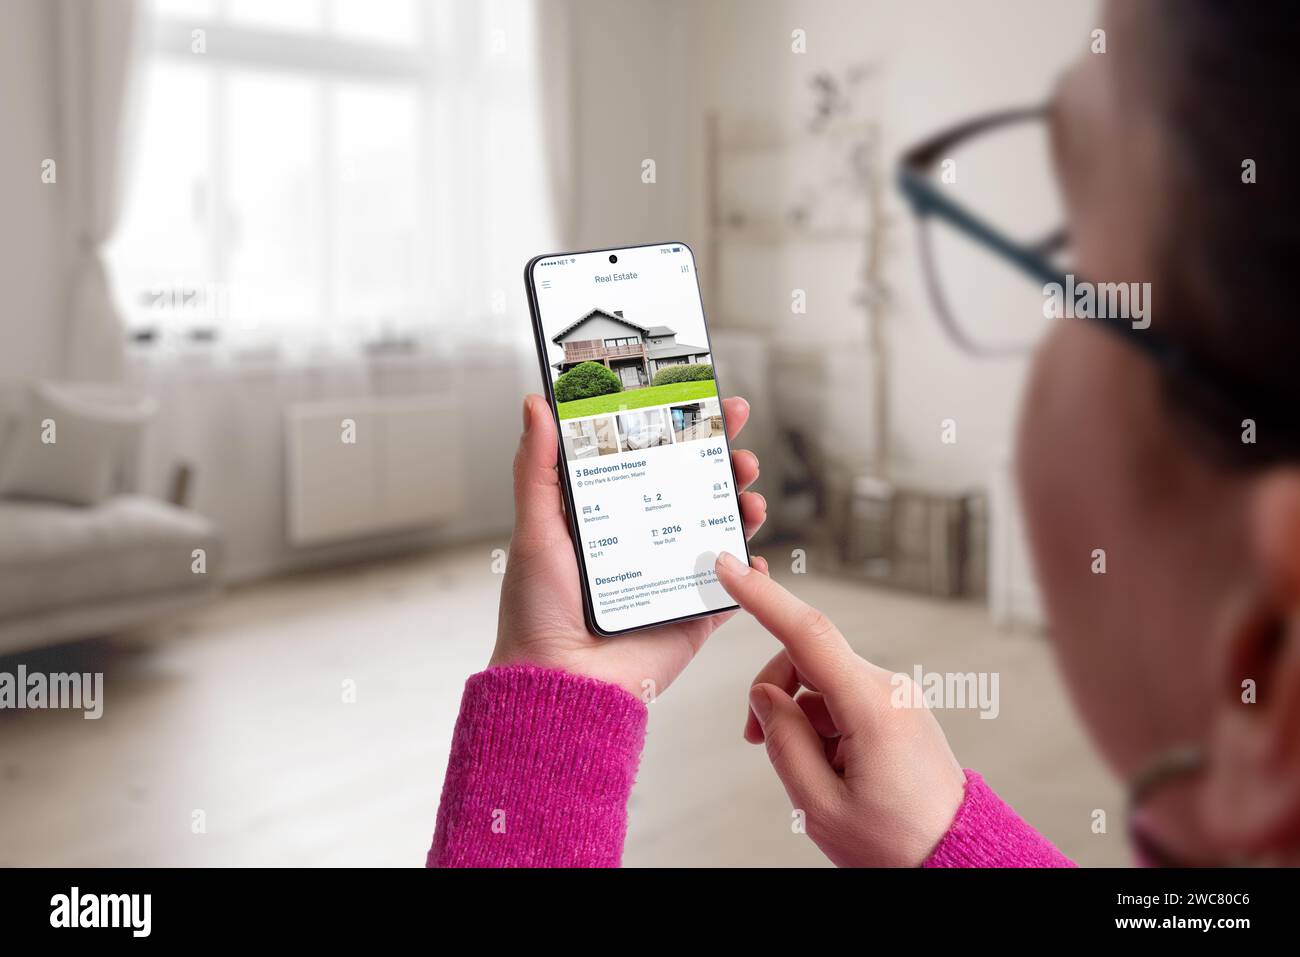 Smartphone mit einer App für Wohnimmobilien in Frauenhänden. Wohnzimmereinrichtung im Hintergrund, die moderne Technologie mit Zuhause verbindet Stockfoto